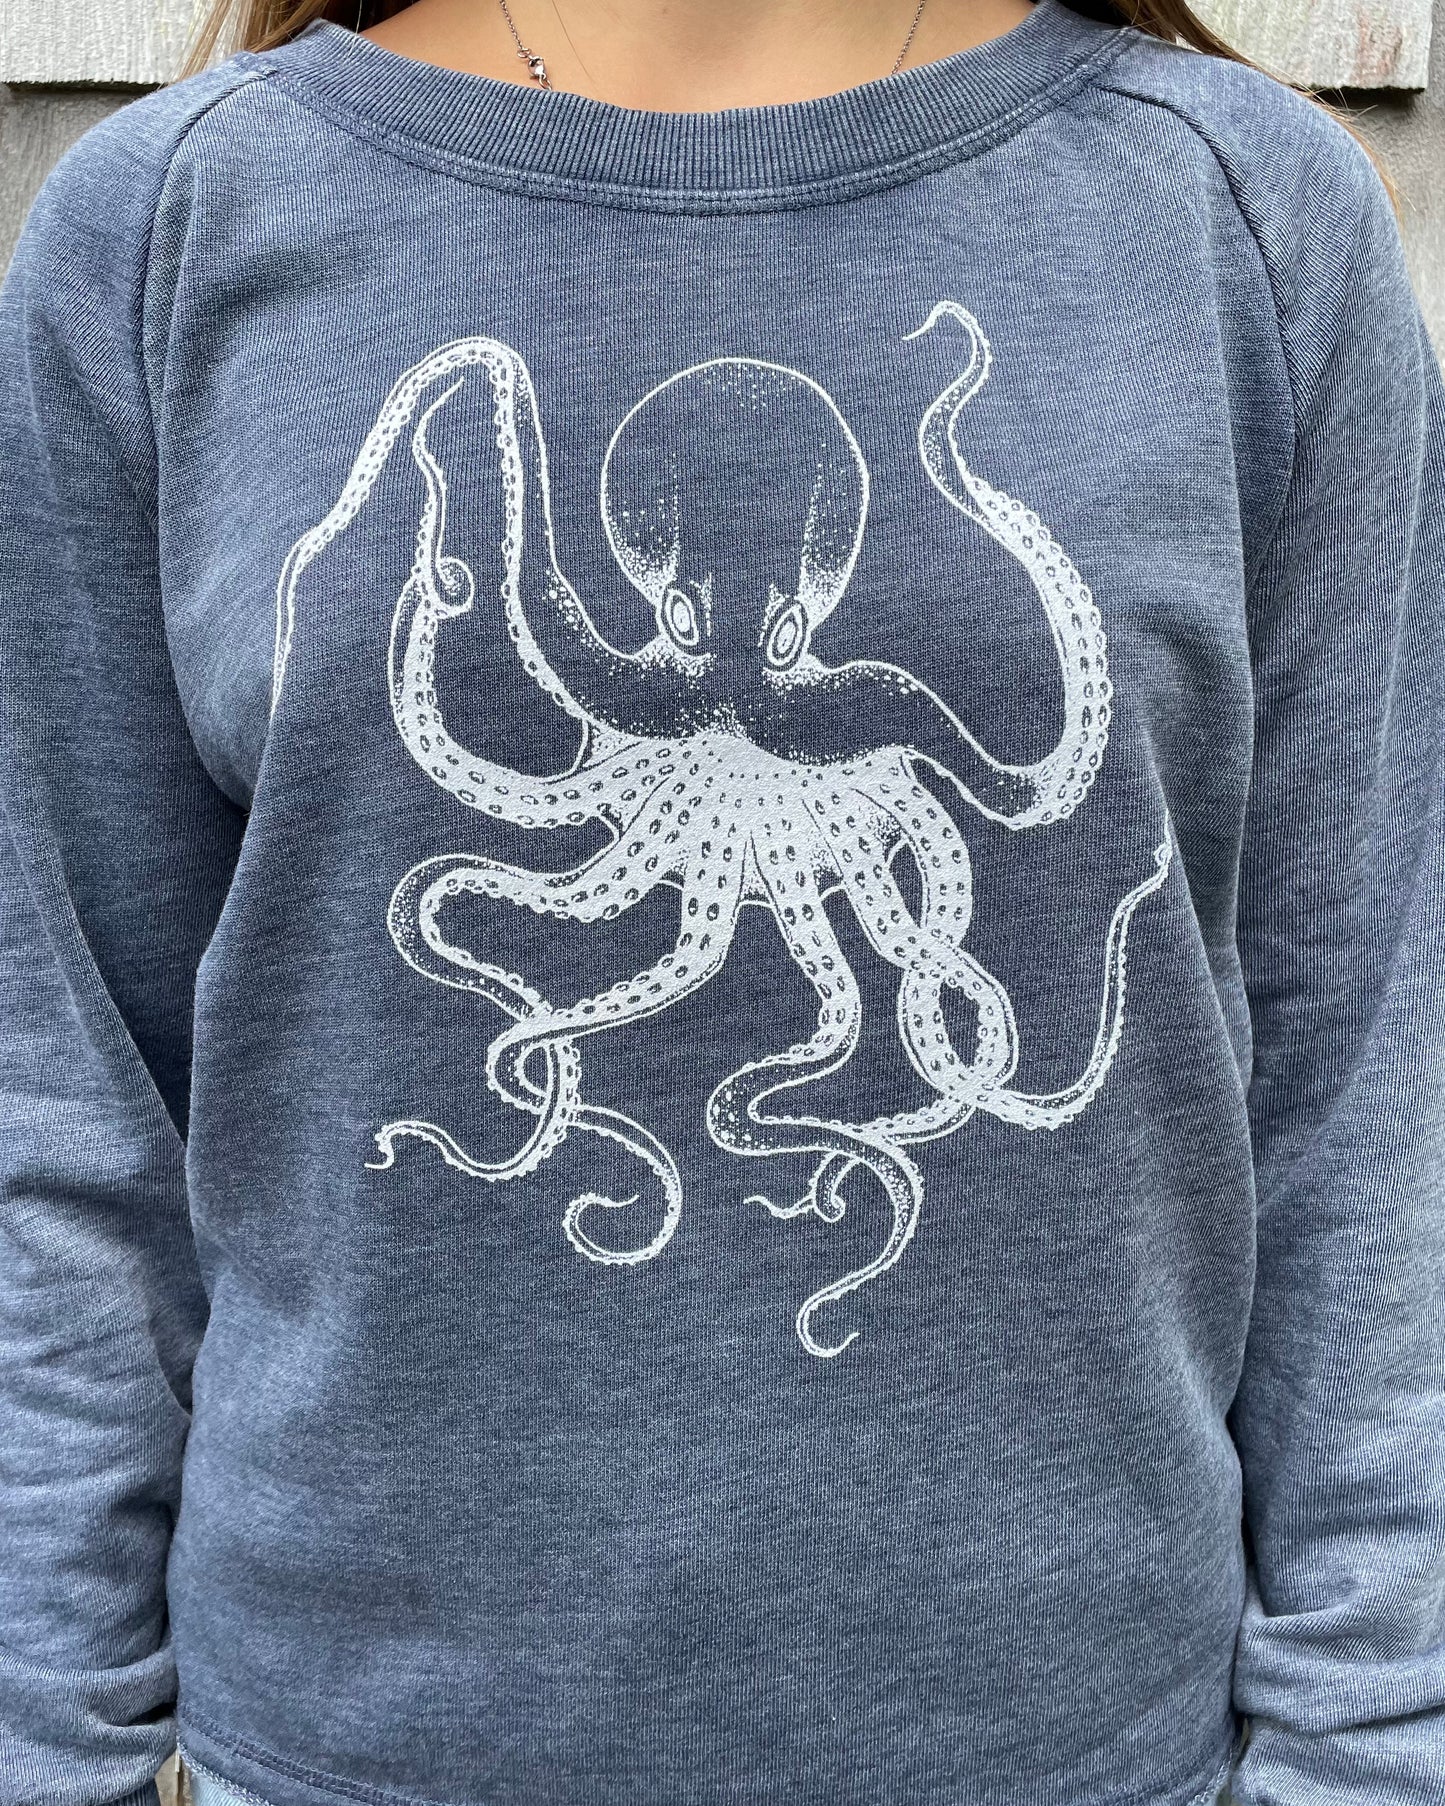 Octopus Crew Pullover